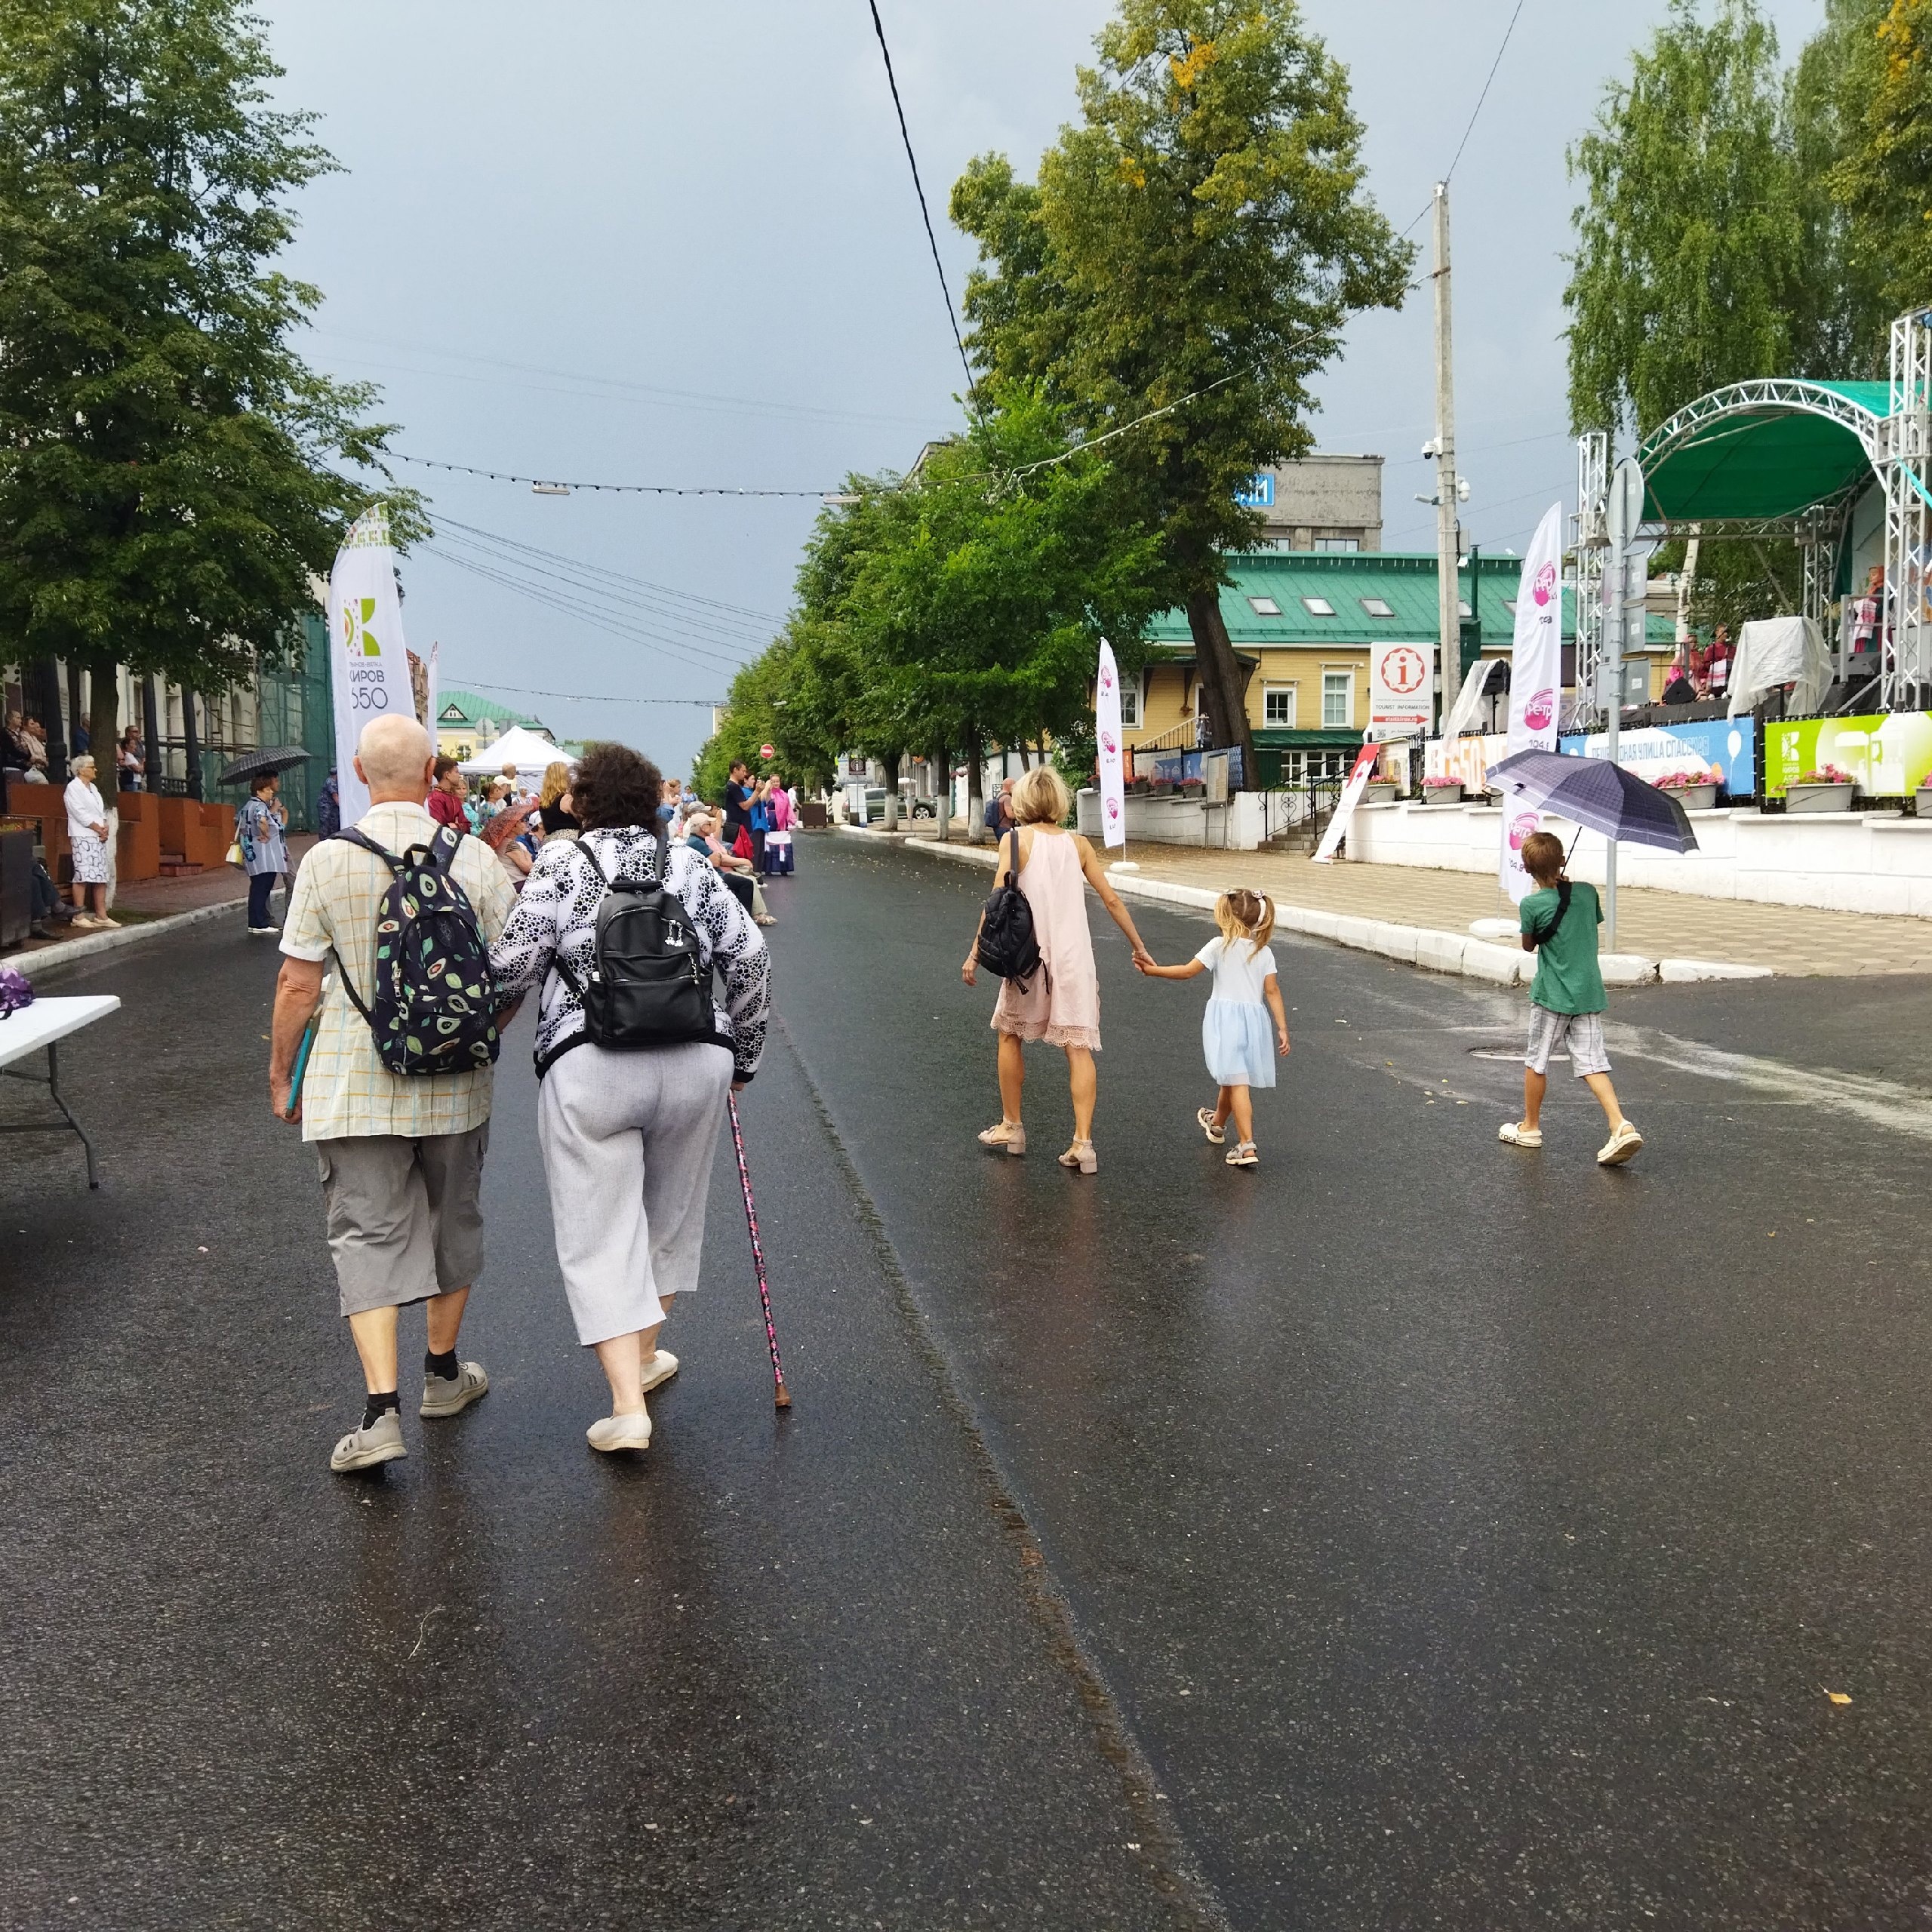 Бесплатные семейные экскурсии стартовали в Кирове: как на них попасть 